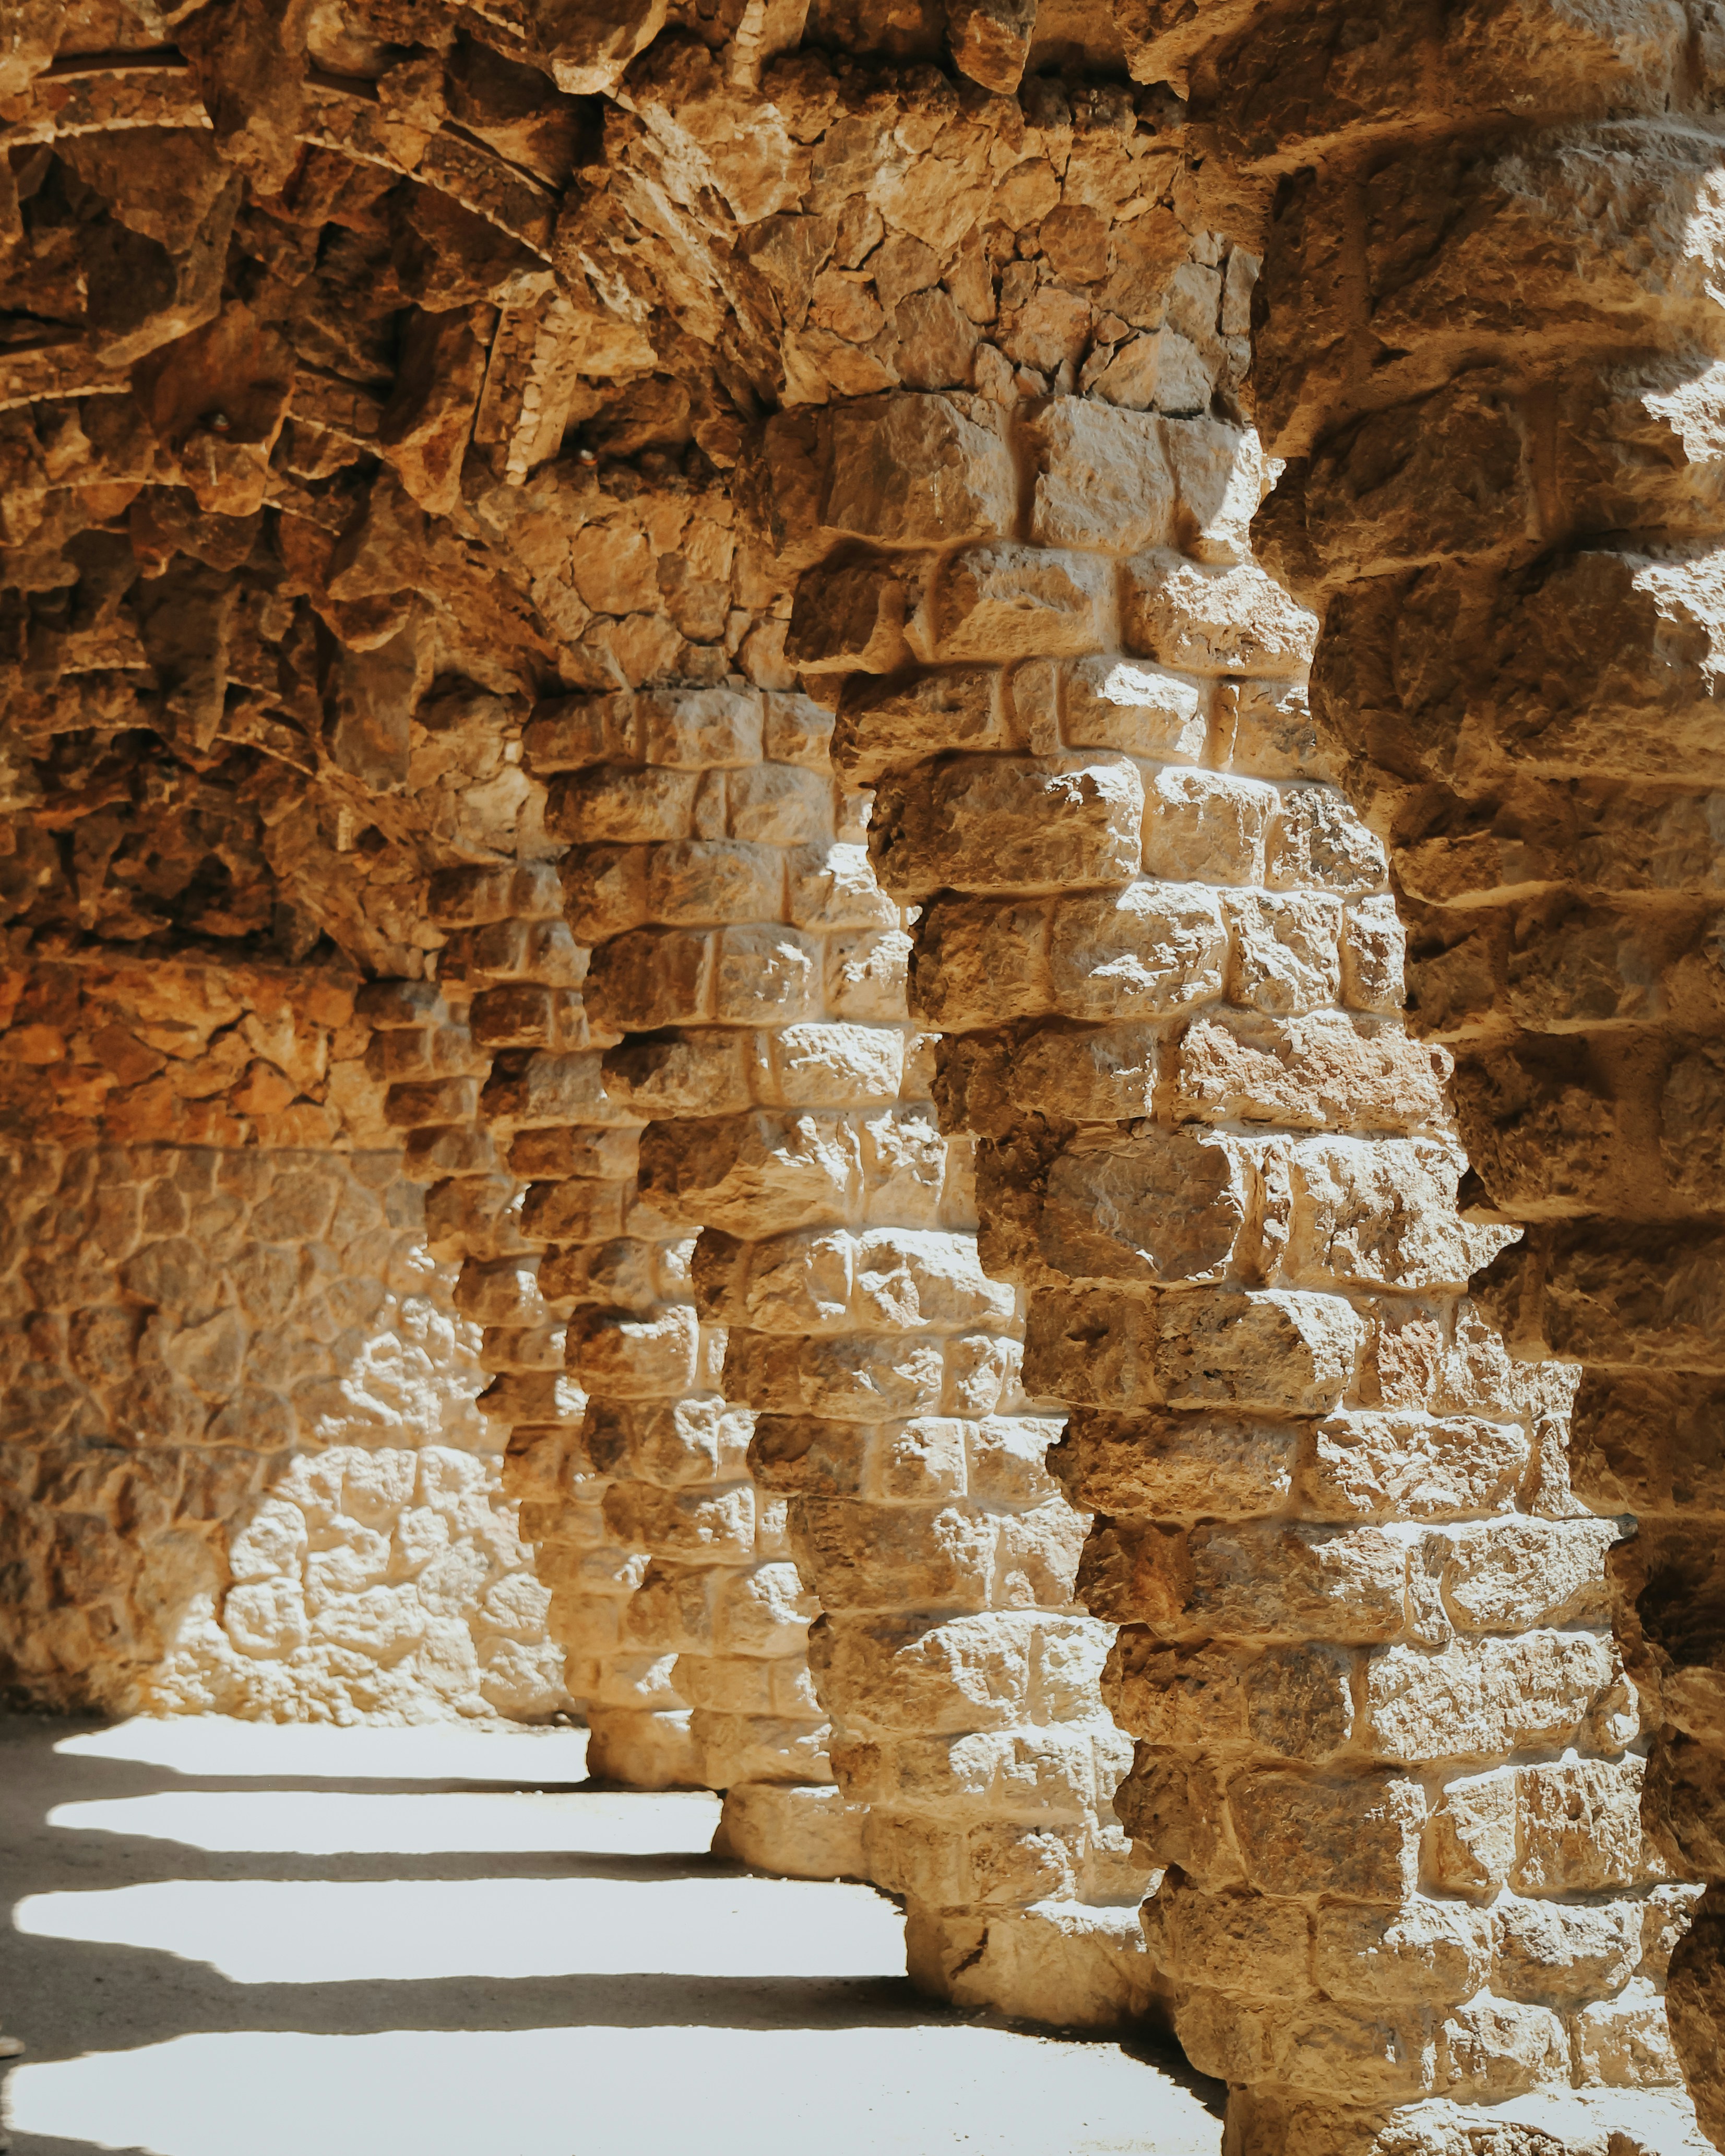 Rock columns in a passageway at Park Guell